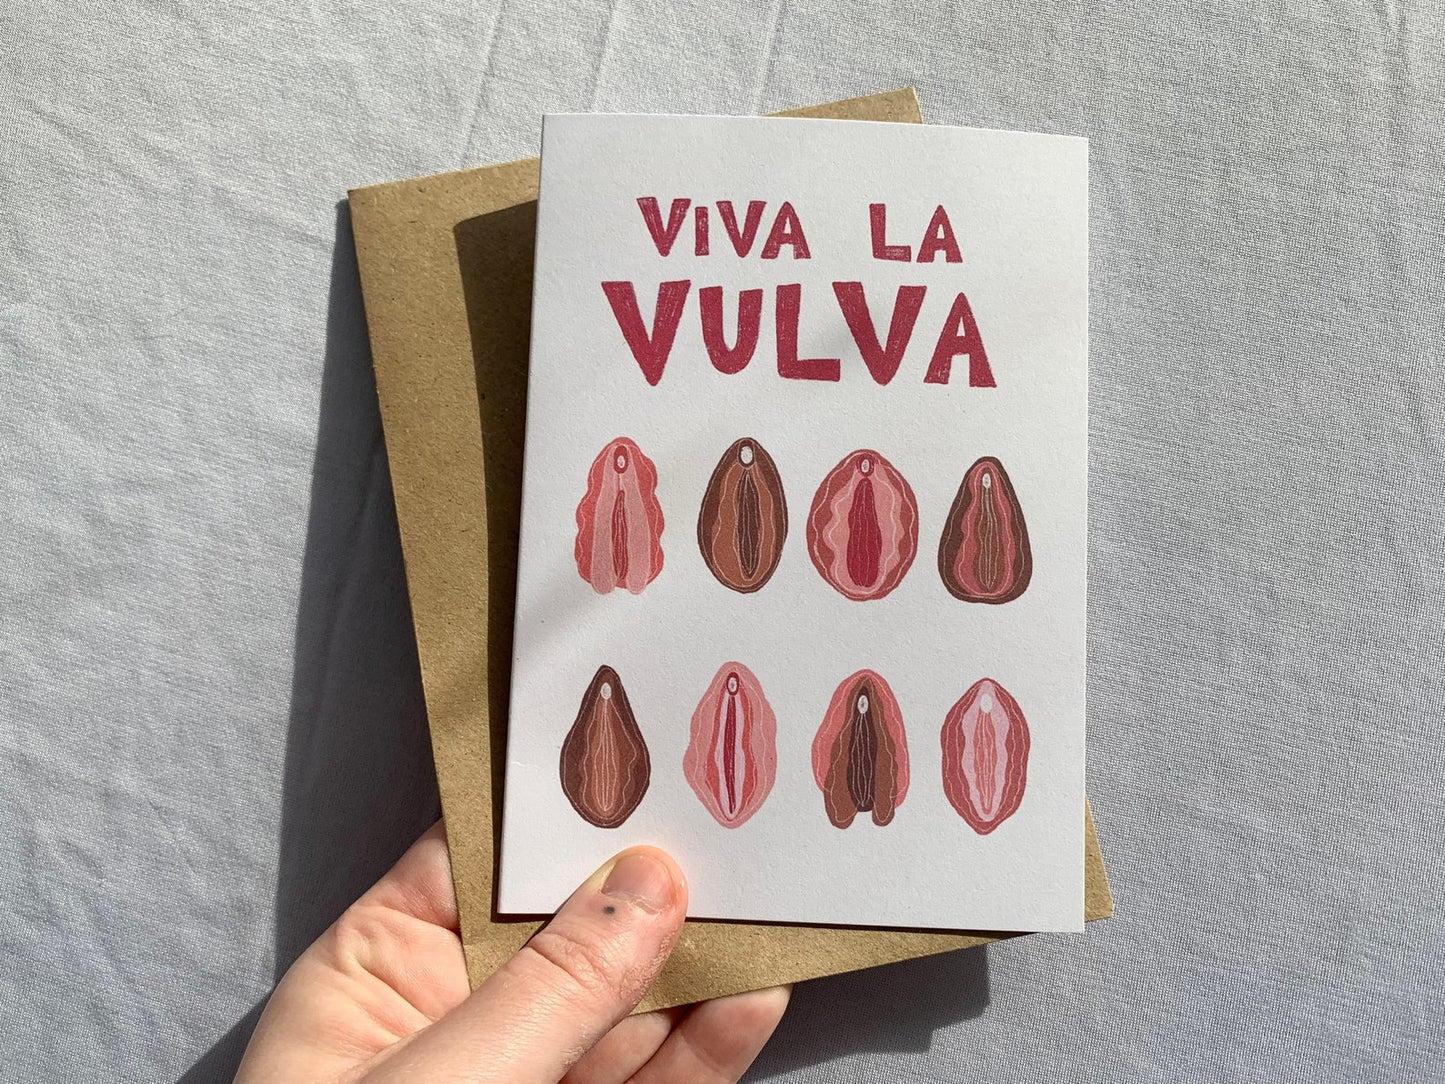 Viva la vulva card